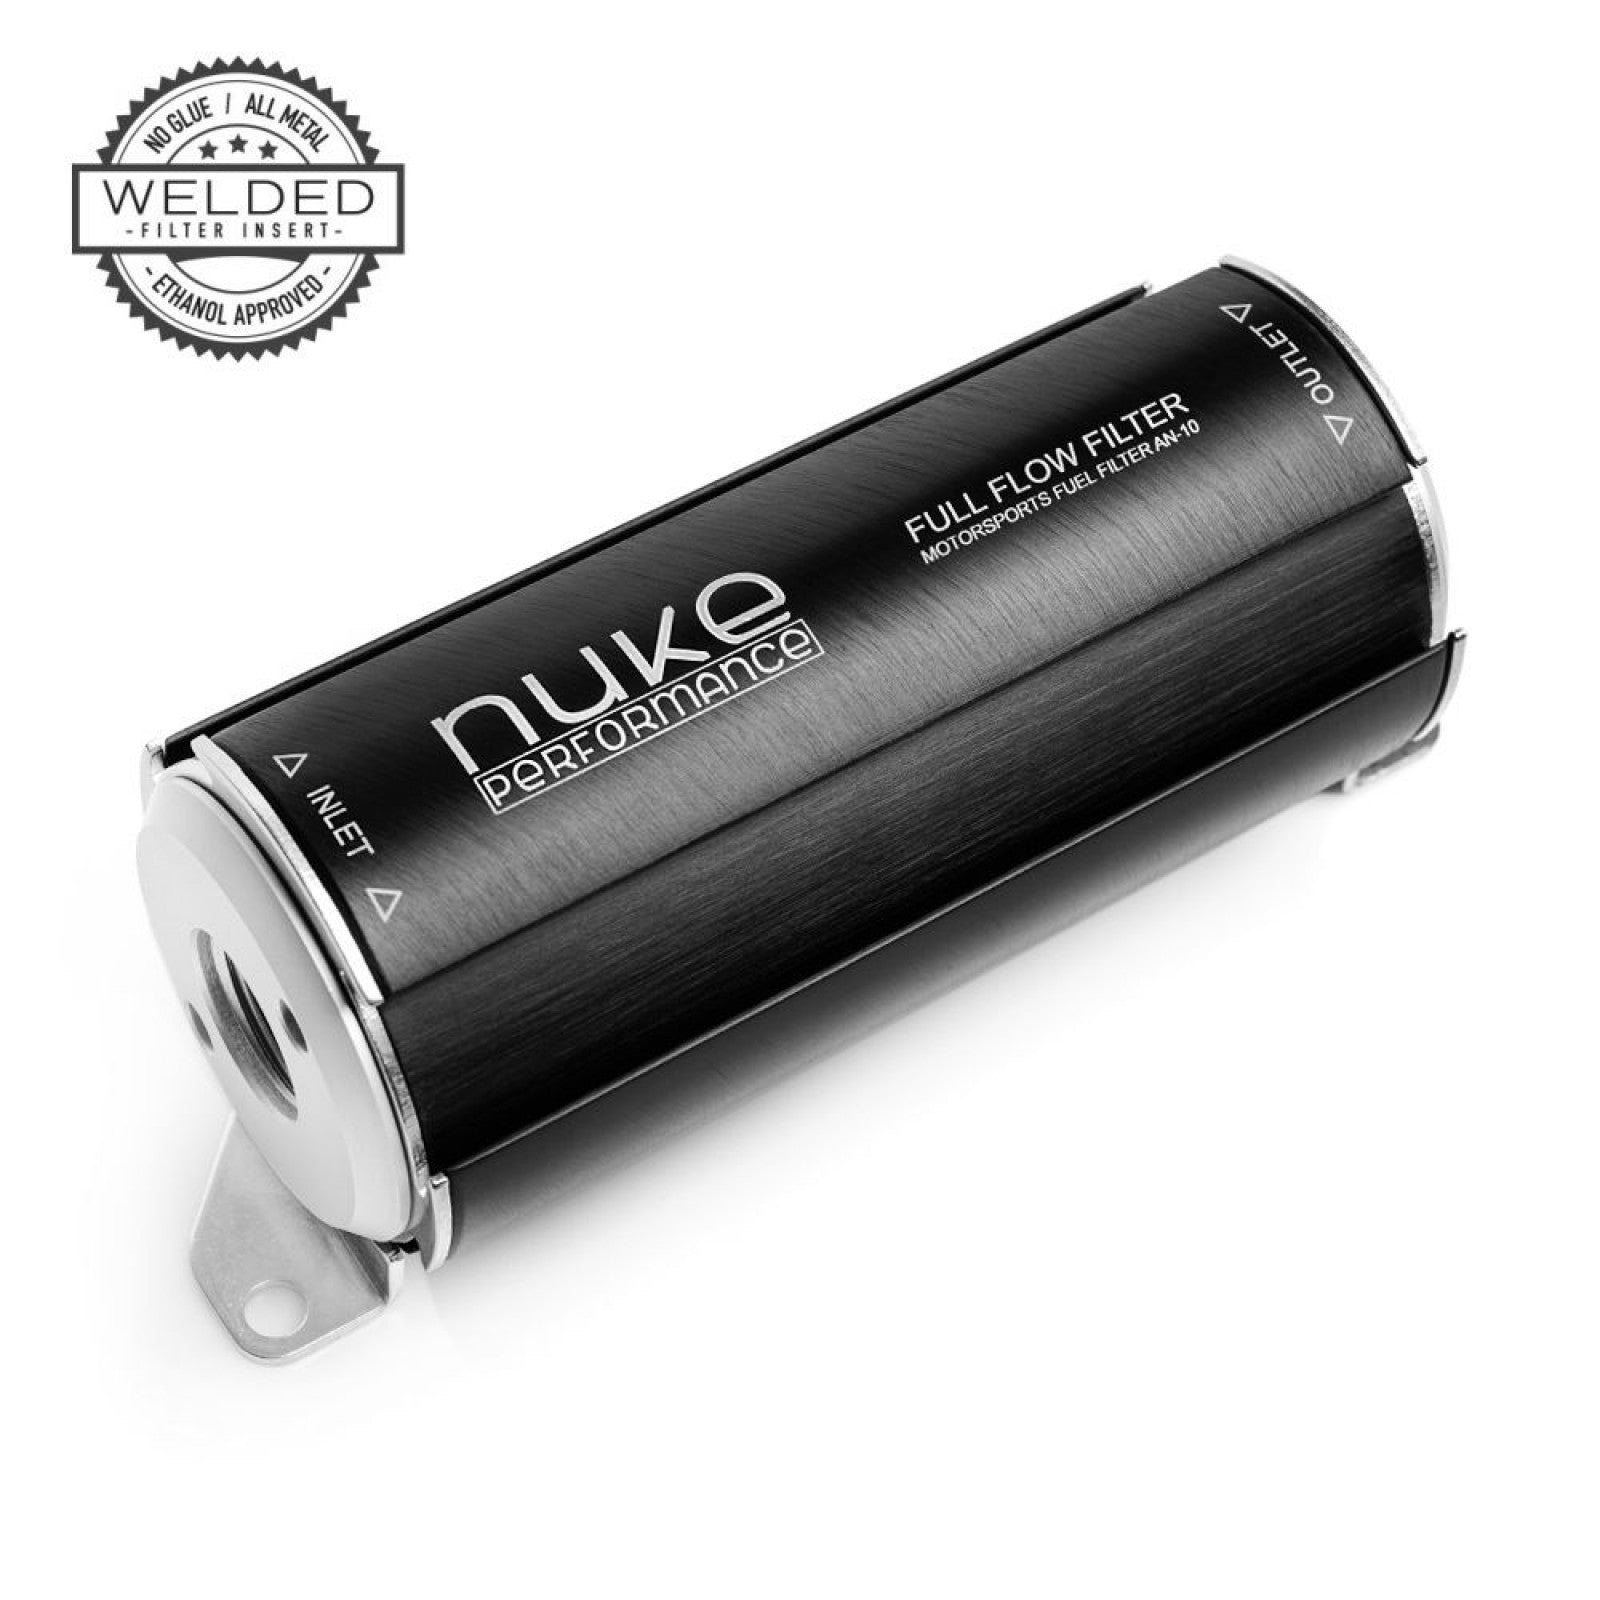 Filtro de combustible Nuke Performance 10 micras AN-10 - Elemento filtrante de celulosa